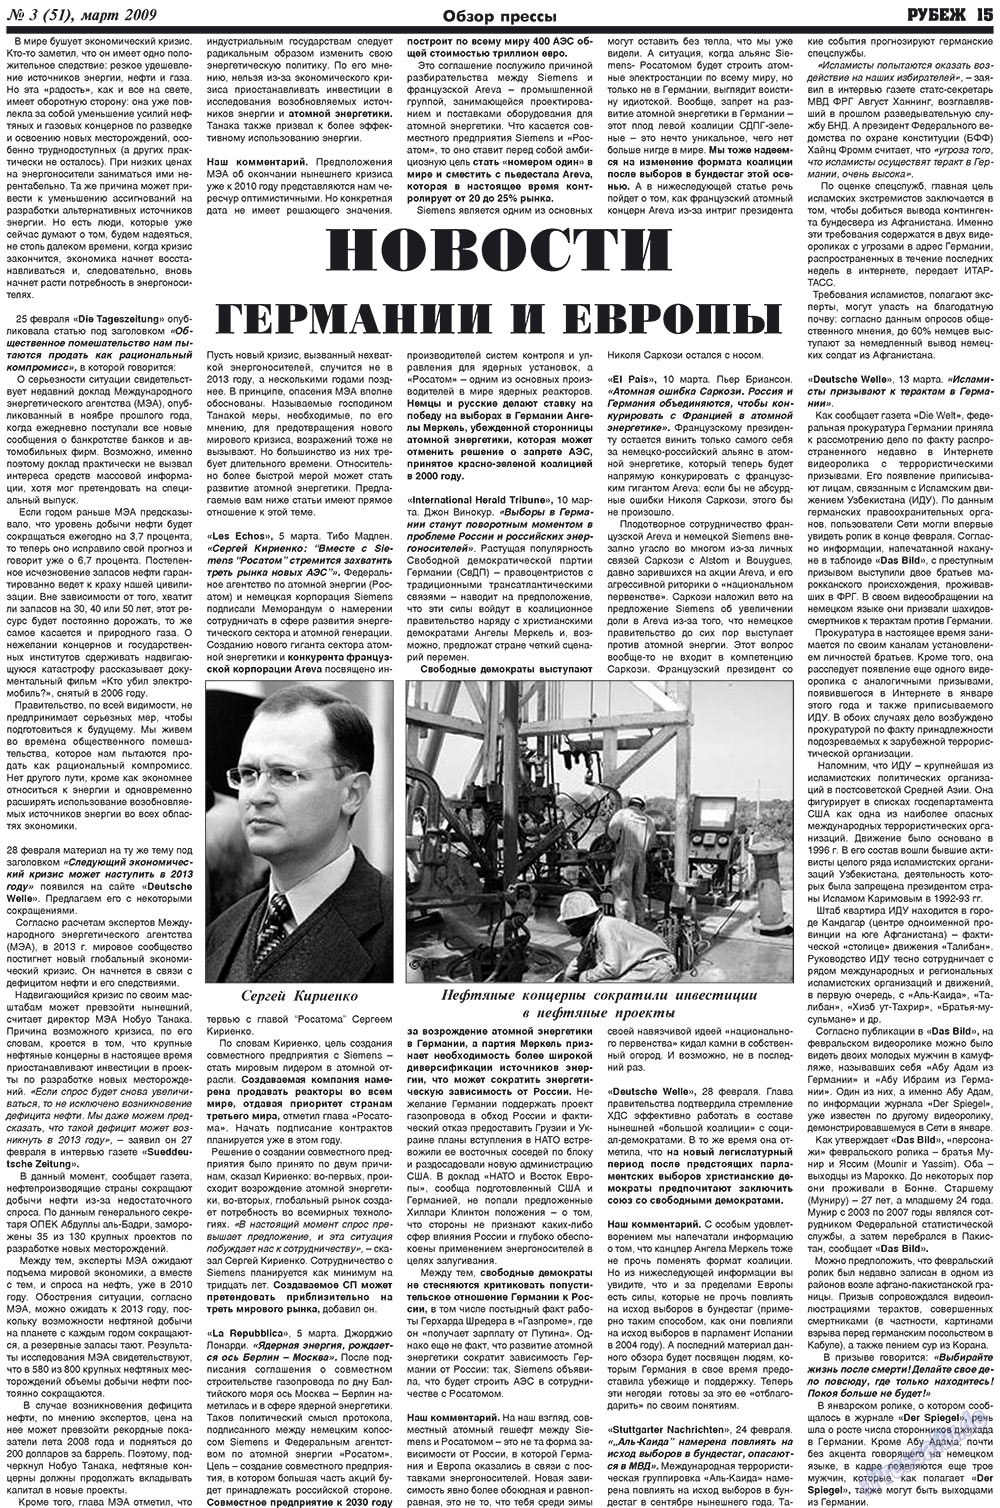 Рубеж (газета). 2009 год, номер 3, стр. 15